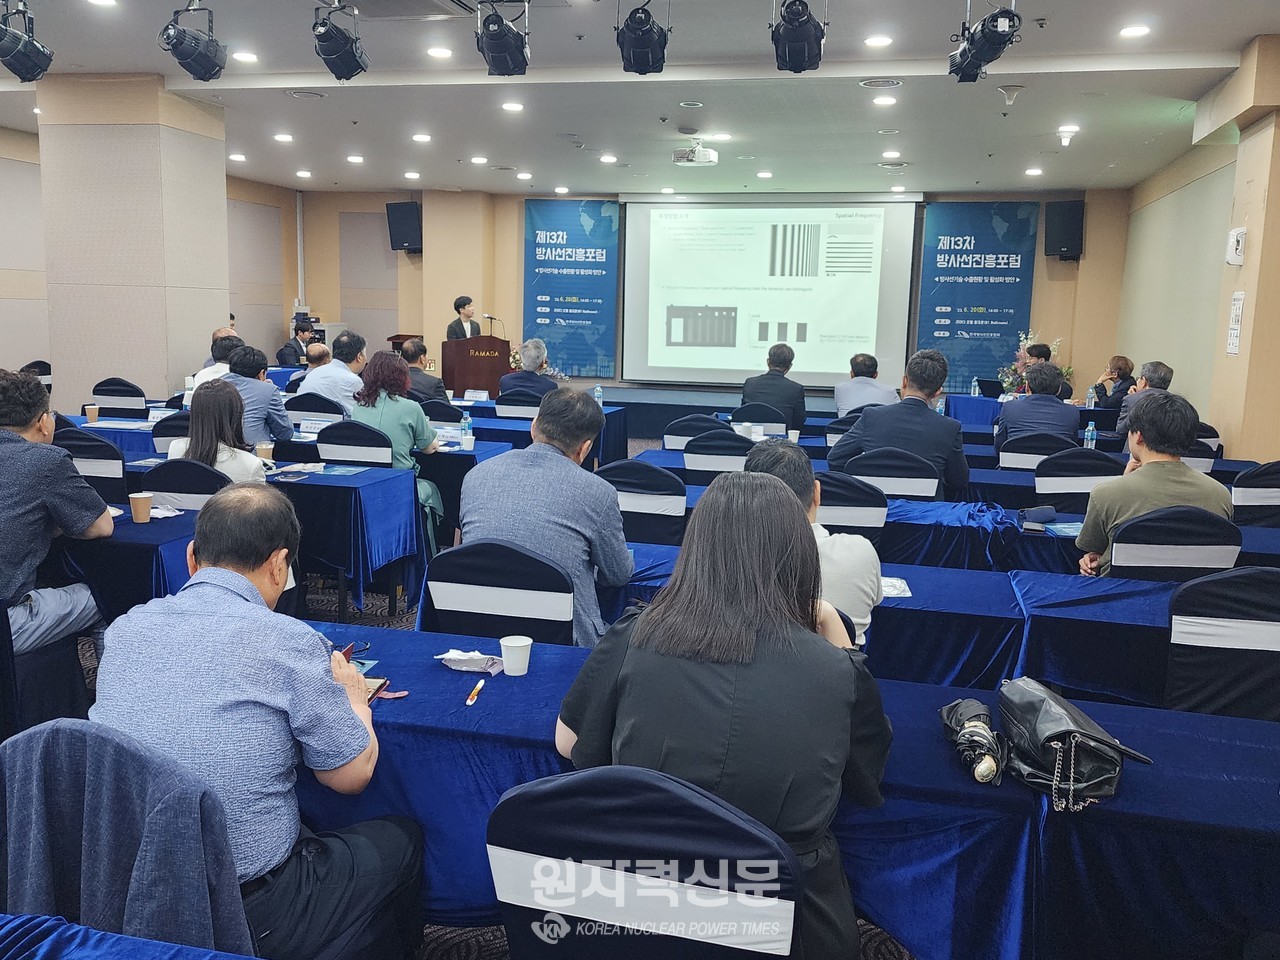 한국방사선진흥협회는 20일 서울 라마다호텔에서 ‘제13차 방사선진흥포럼’을 개최했다.   사진 = 이석우 기자